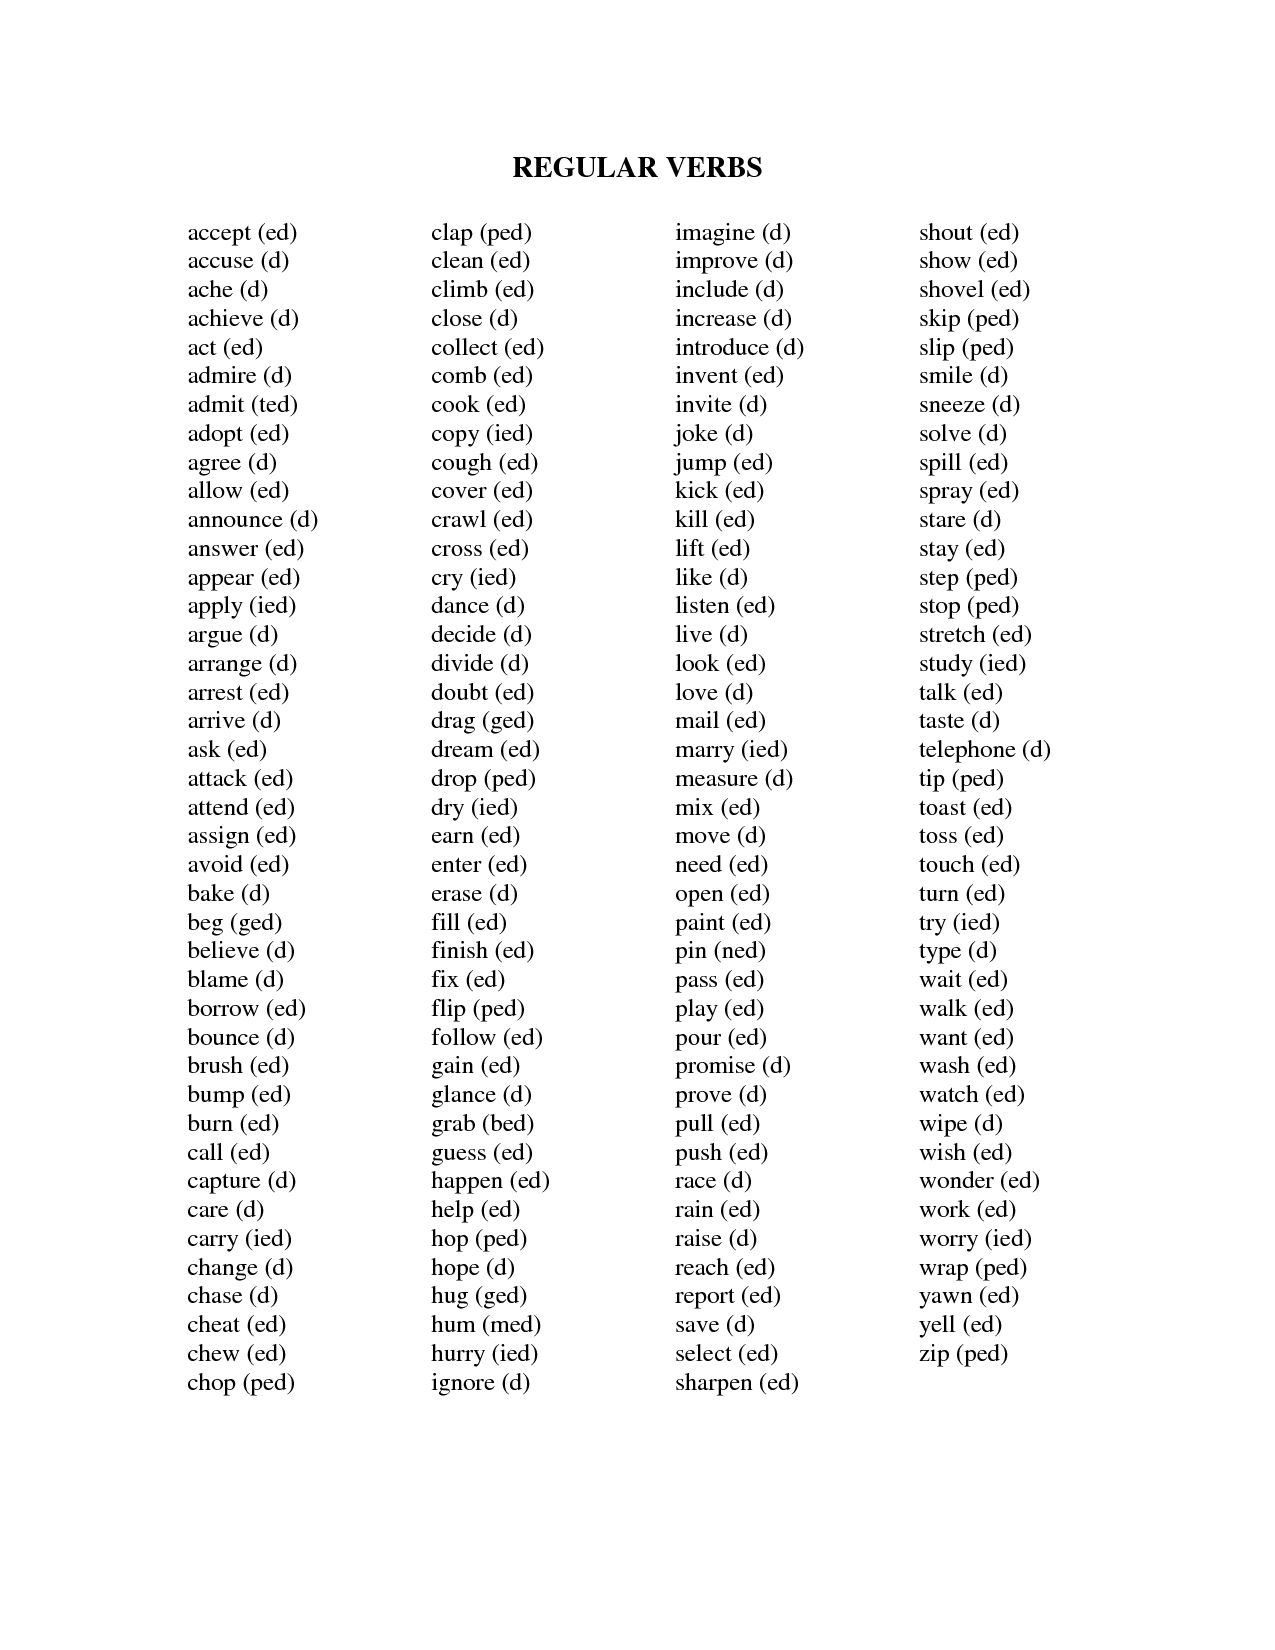 verbs list pdf